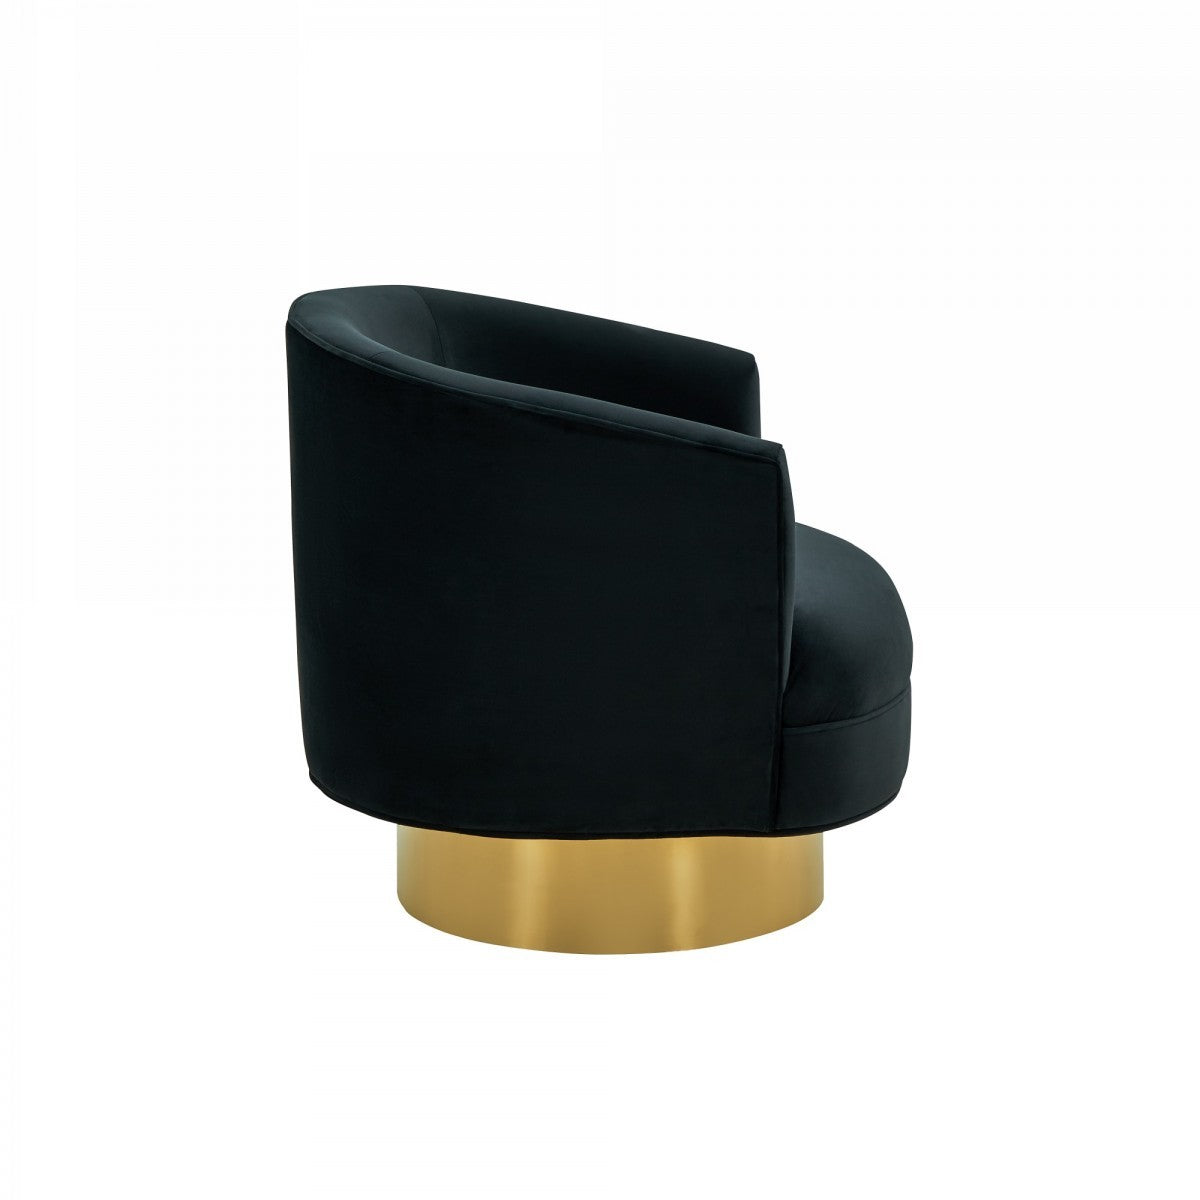 31" Black And Gold Velvet Barrel Chair